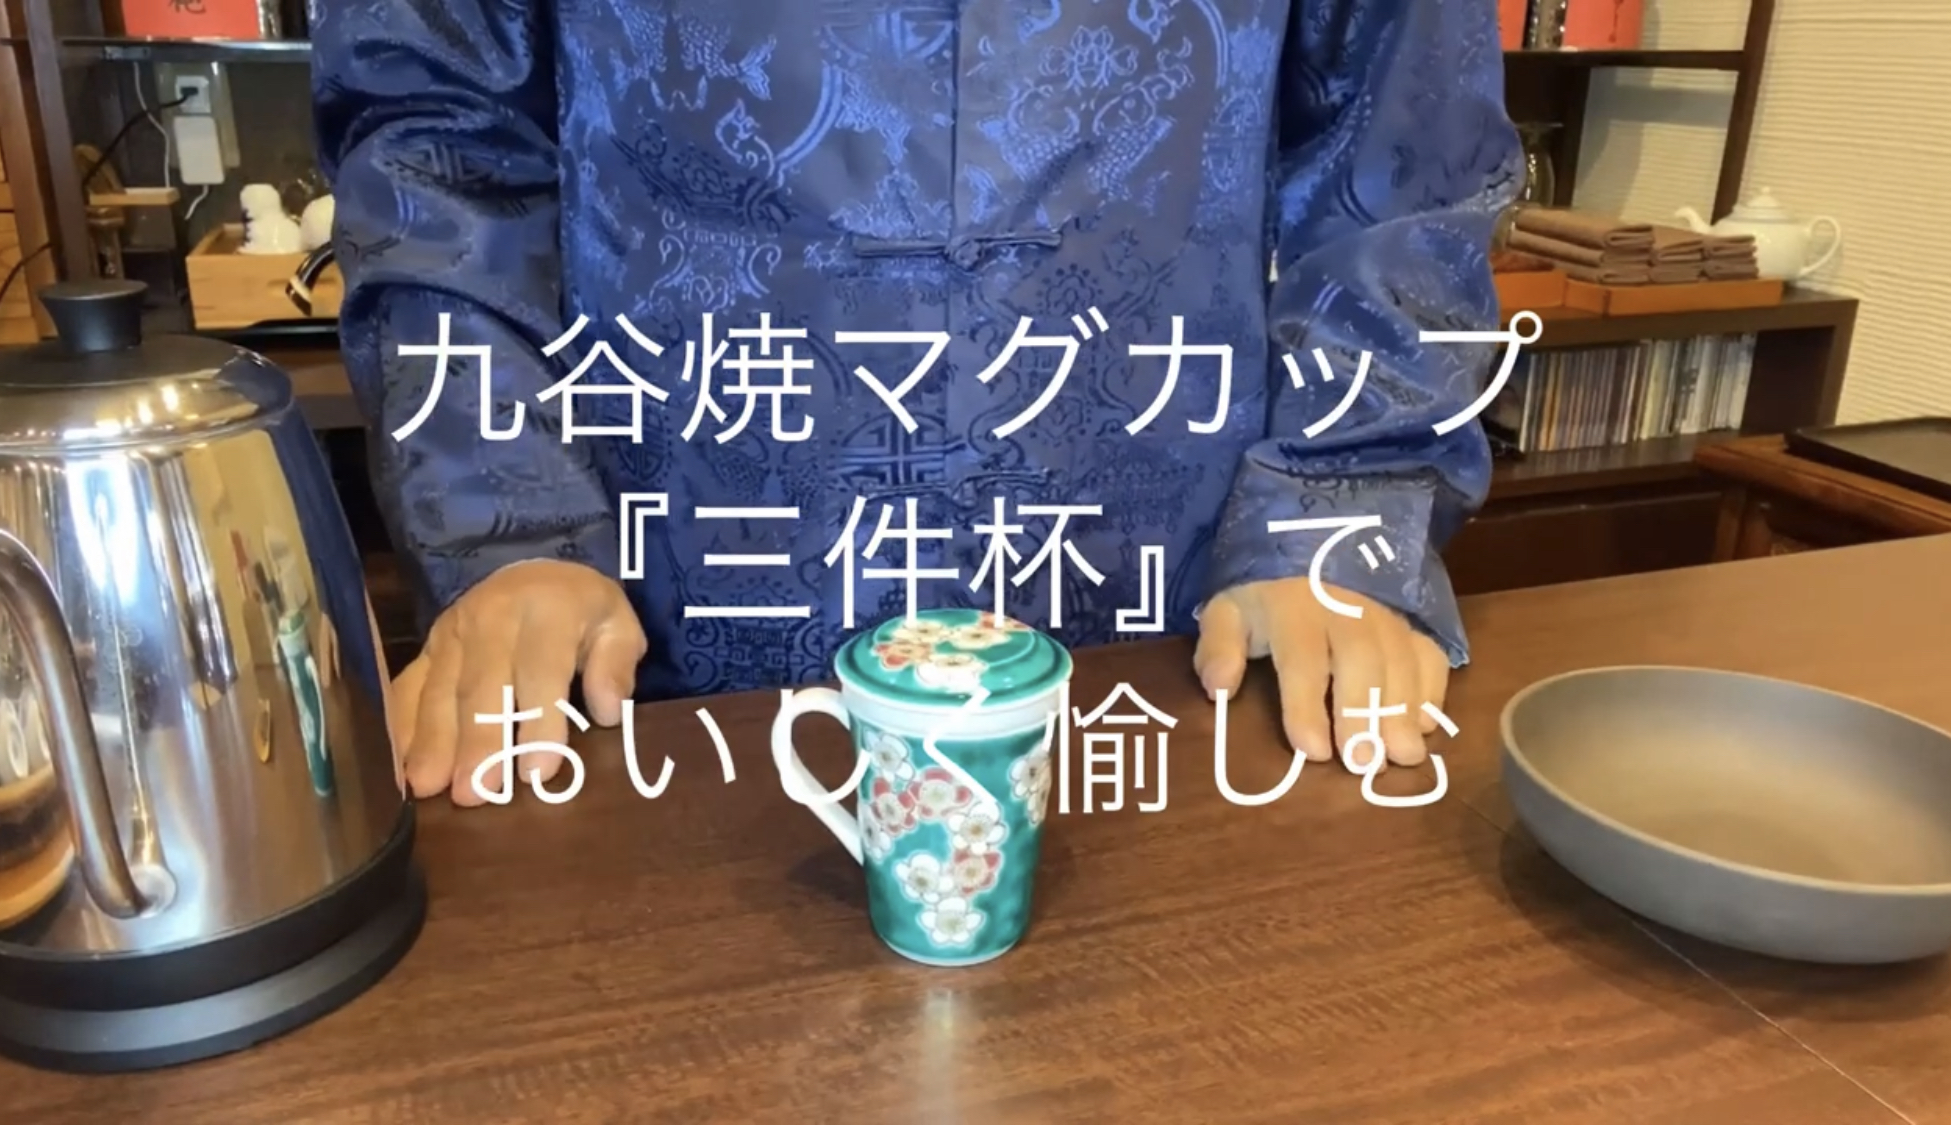 九谷焼マグカップ「三件杯」でおいしく愉しむアイキャッチ